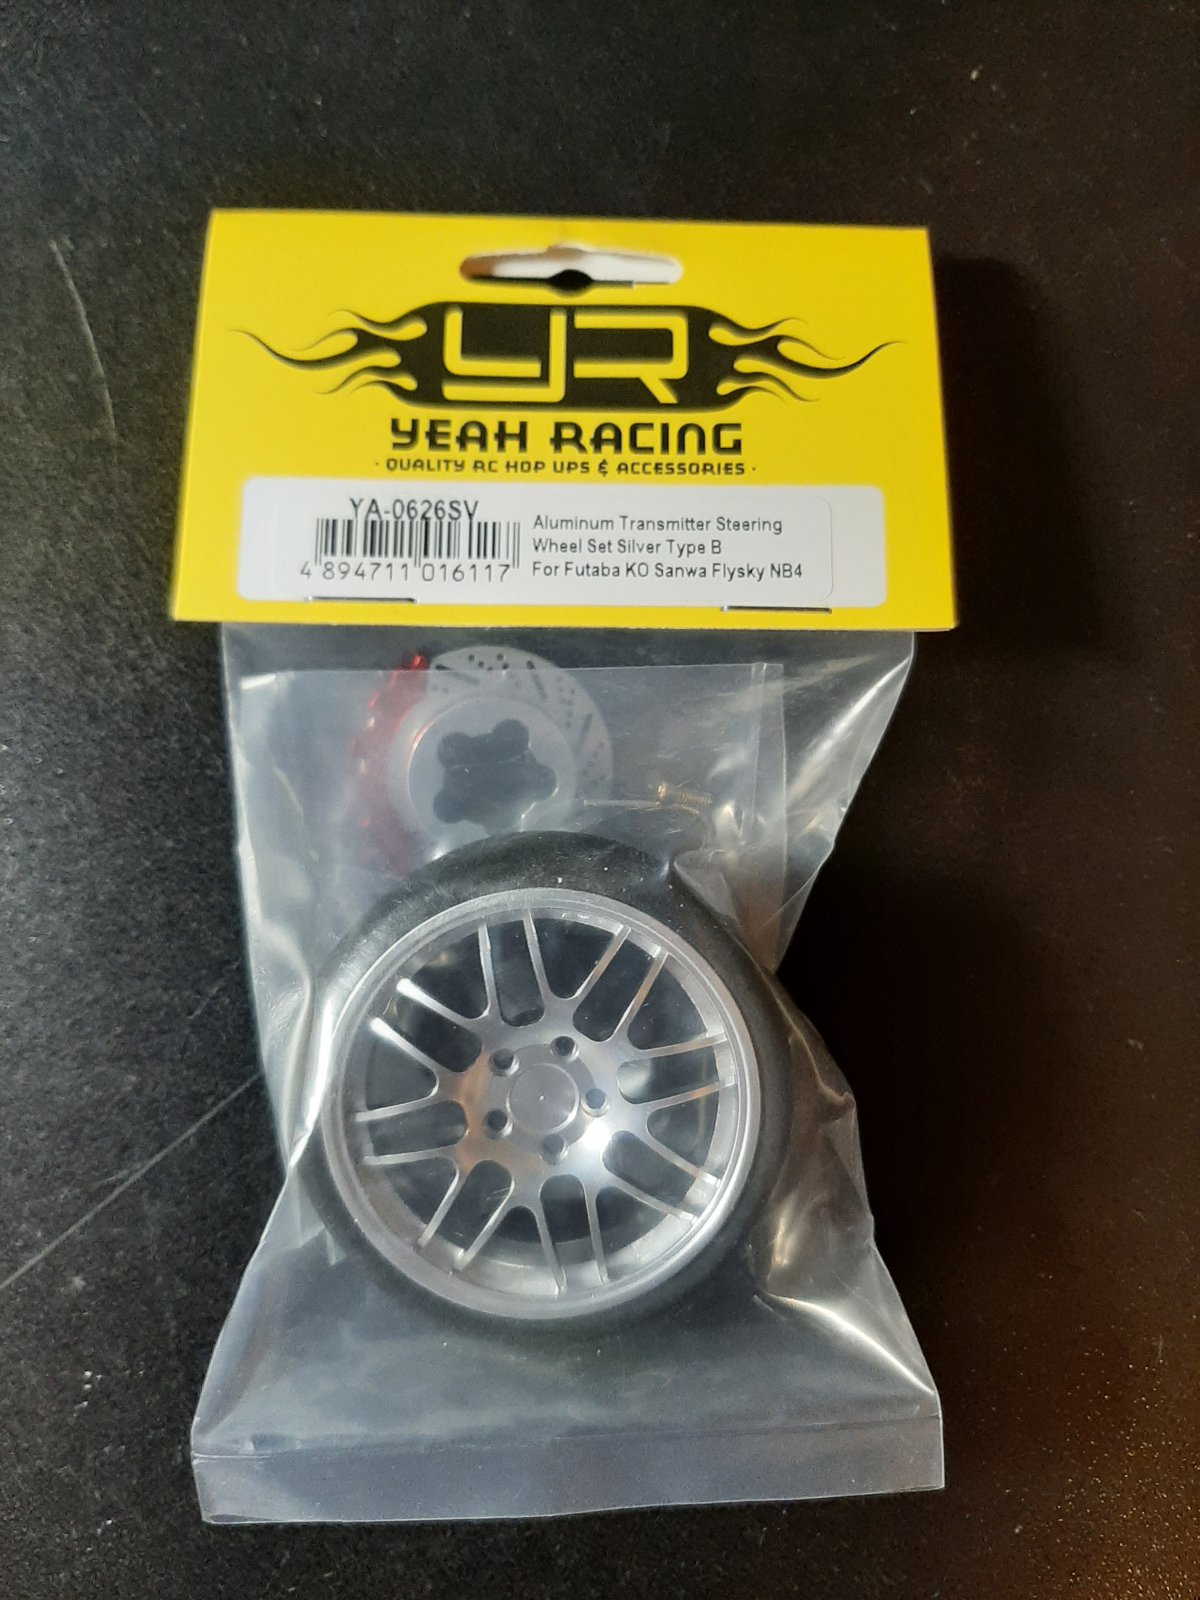 Yeah Racing Foam Wheel.jpg